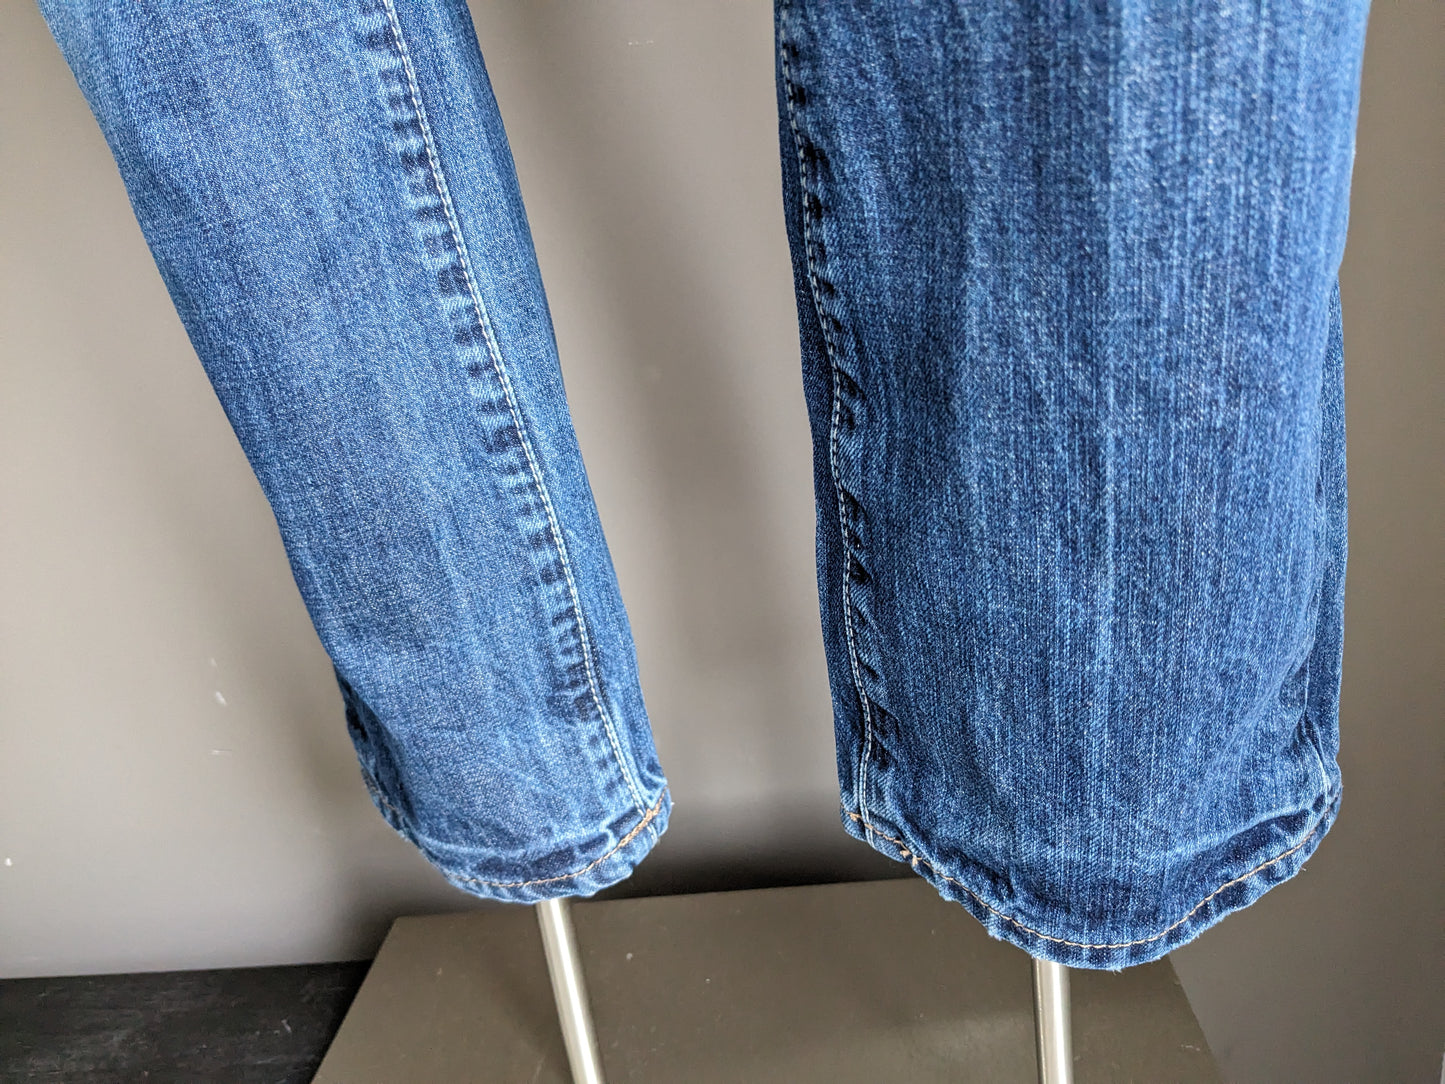 Jeans tommy hilfiger. Colorato blu. Taglia W29 - L32. Digita Rogar. Adattamento regolare.